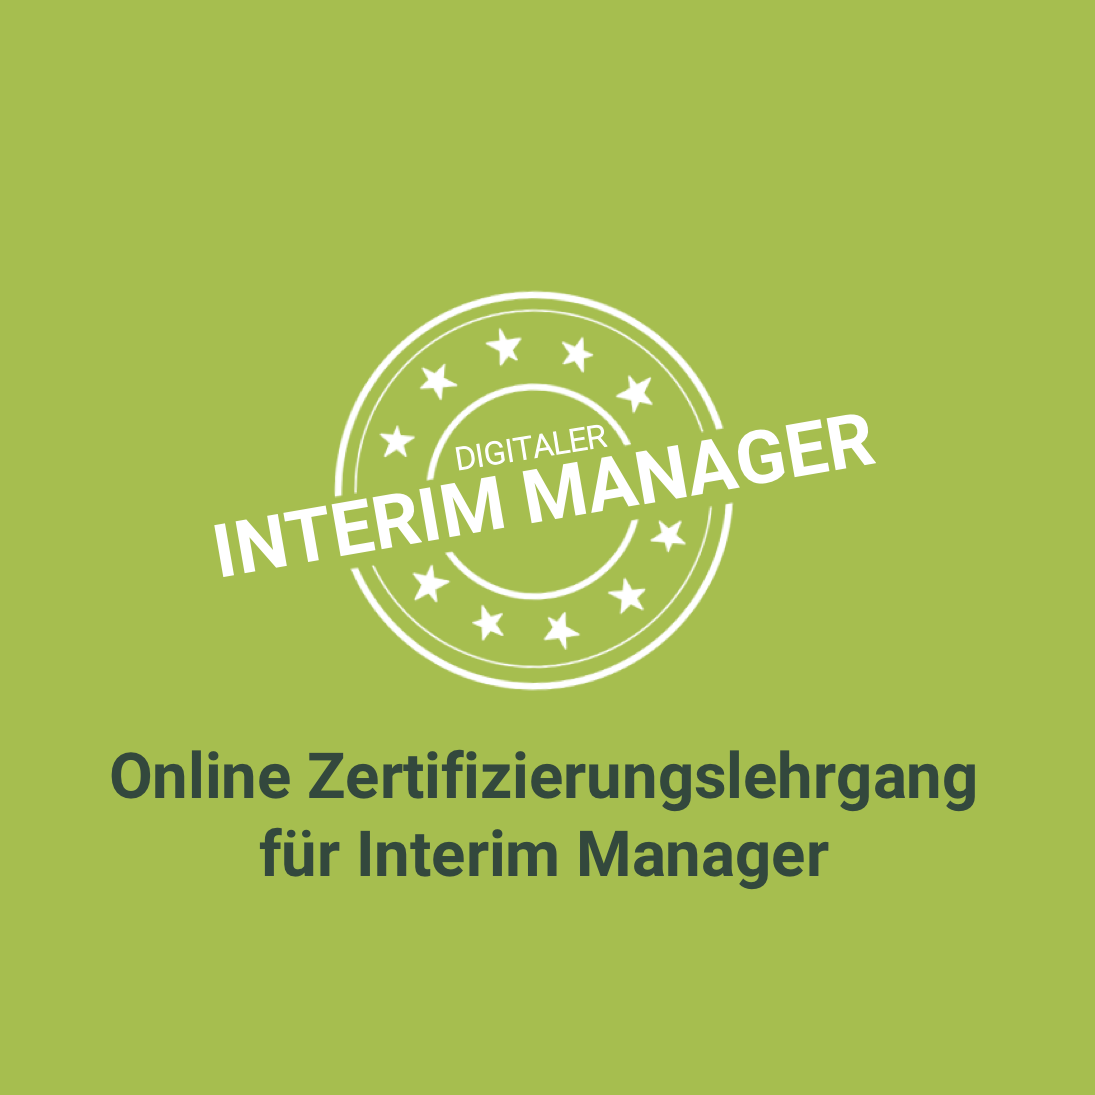 Digitaler Interim Manager Online Zertifizierungslehrgang